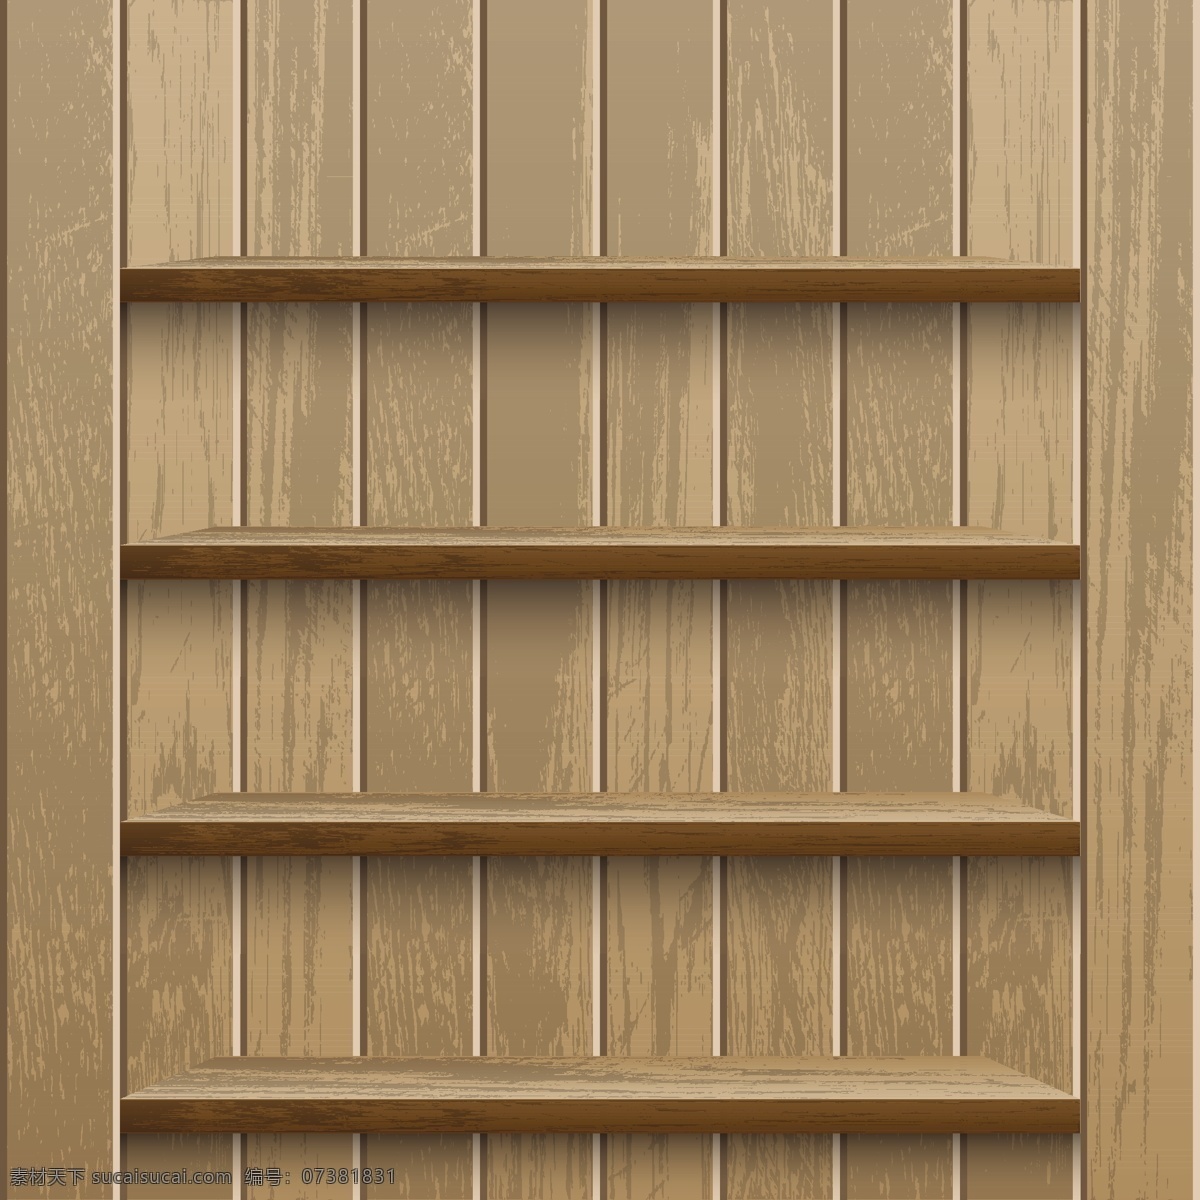 木板木架图片 木板木架 木板 木架 木制品 木纹 木头 室内 效果 背景 墙